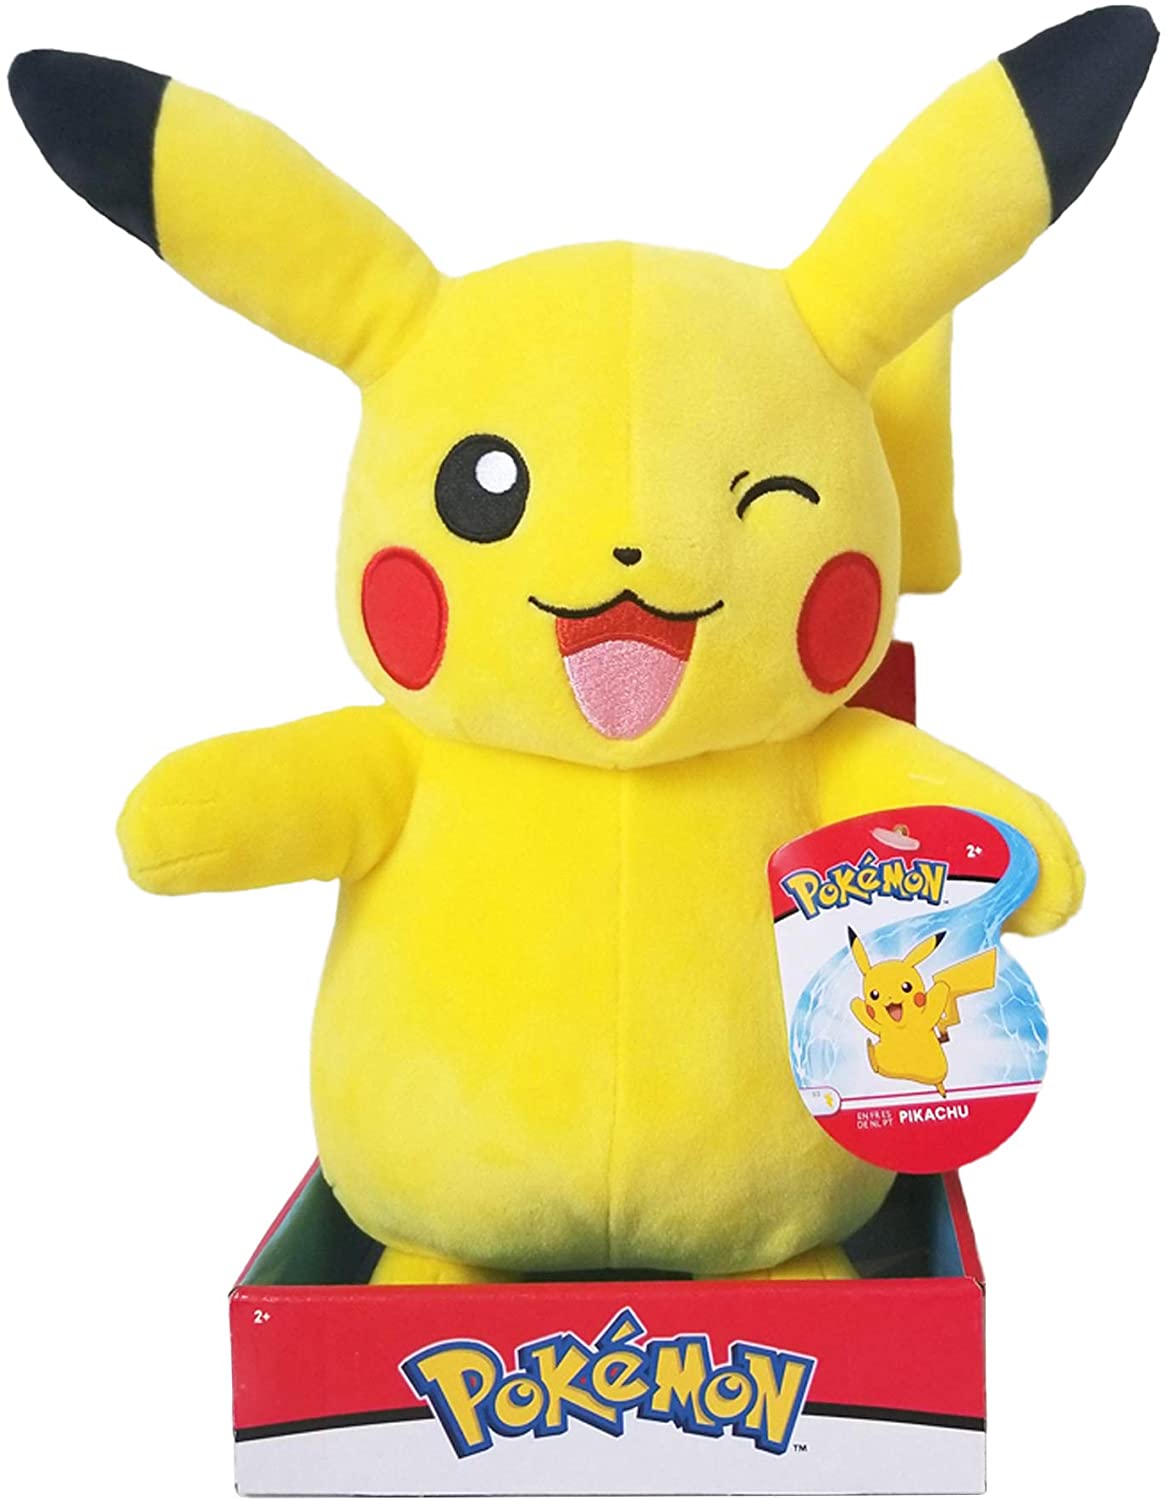 neu 12" 30Cm Pokemon Pikachu Plüschtiere Kuscheltier Plüsch Stofftier Puppe 